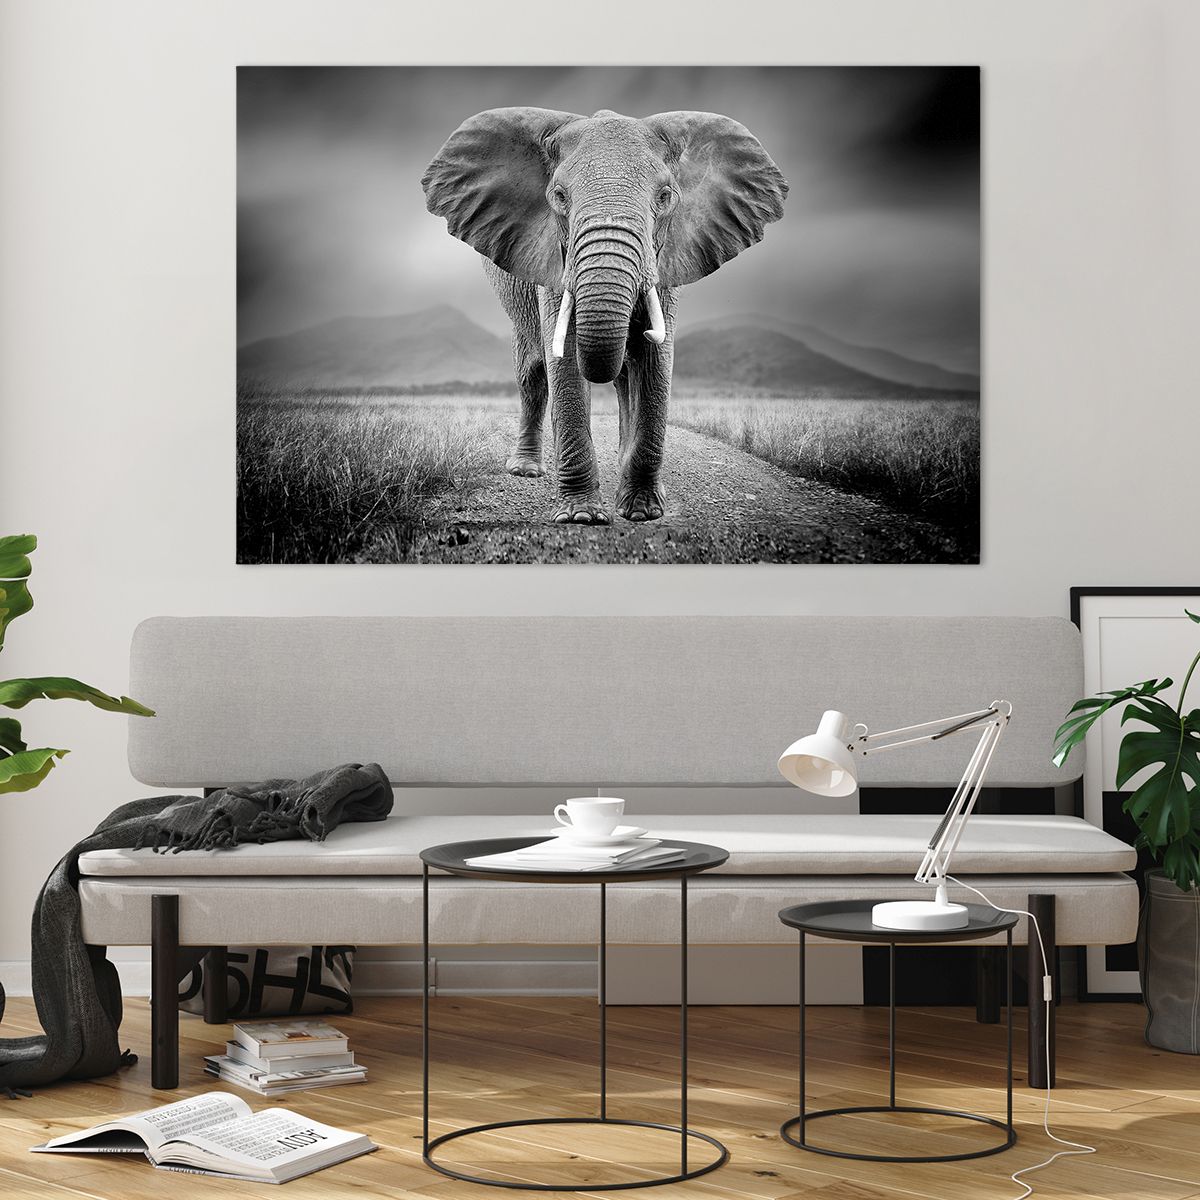 Üveg kép Elefánt, Üveg kép Állatok, Üveg kép Tájkép, Üveg kép Természet, Üveg kép Afrika